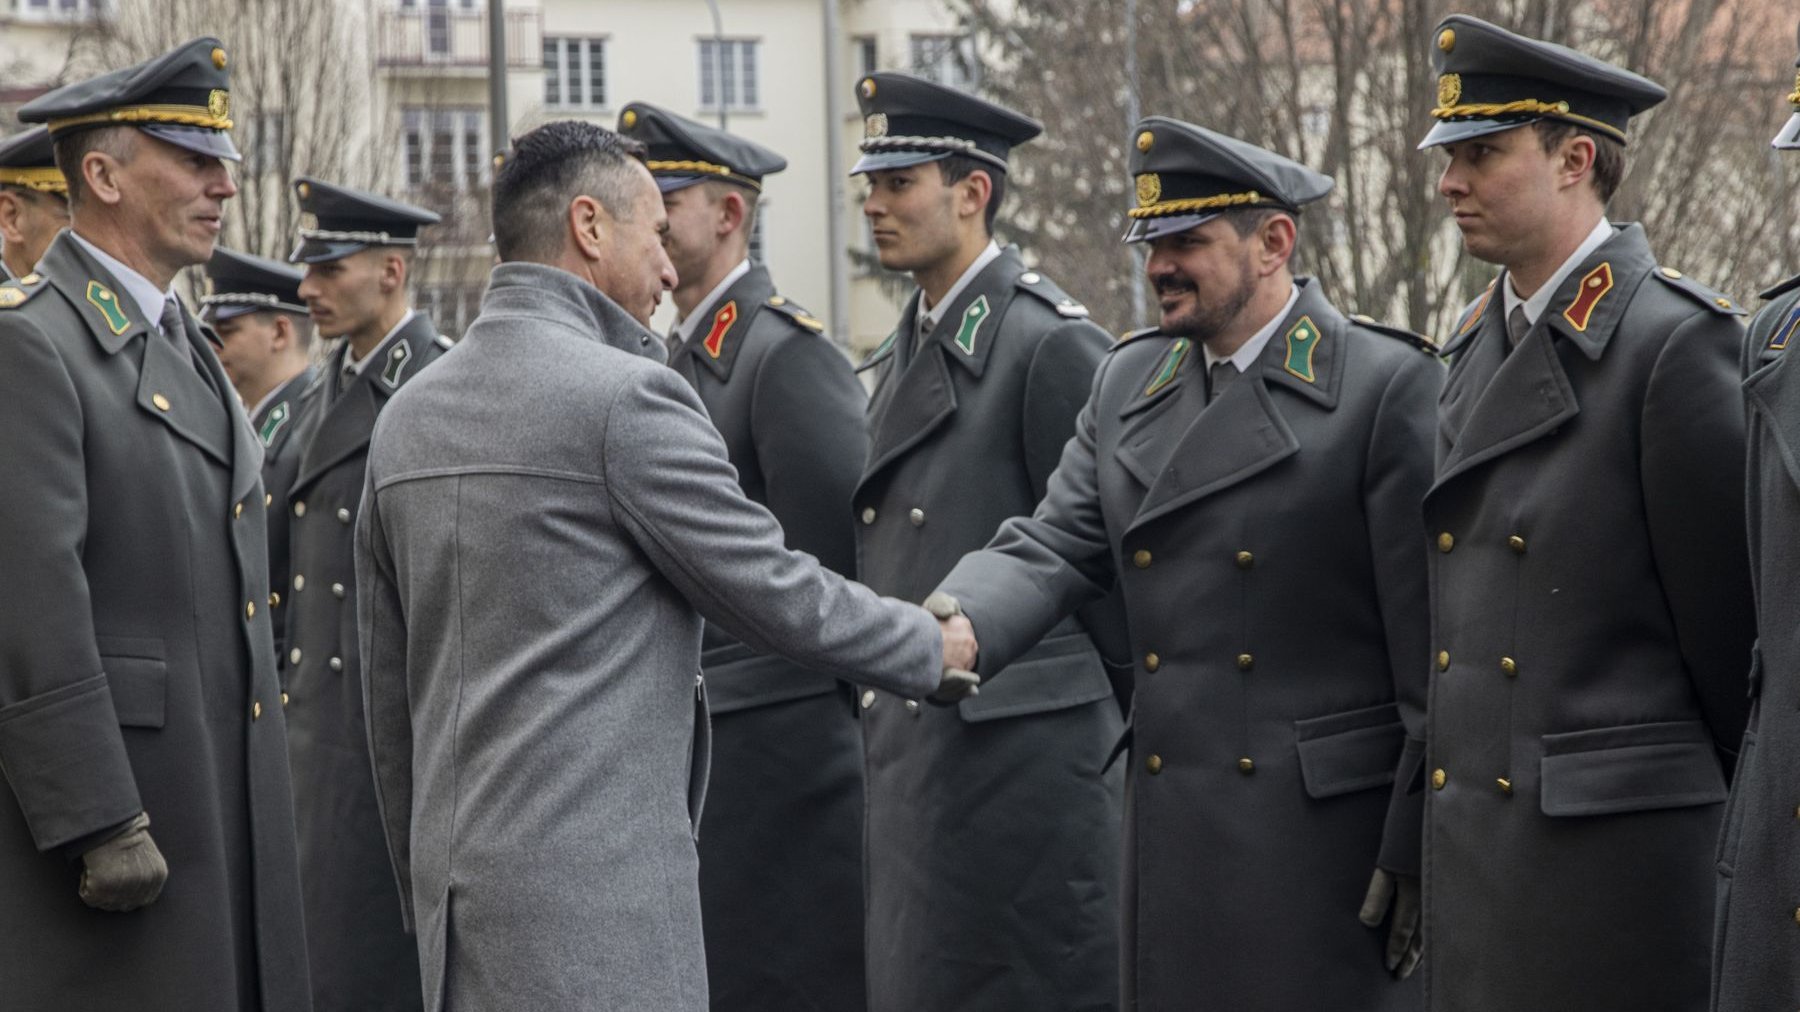 Der burgenländische Landtagspräsident Robert Hergovich begrüßt den Jahrgangsersten, Leutnant Phillip Harlander.